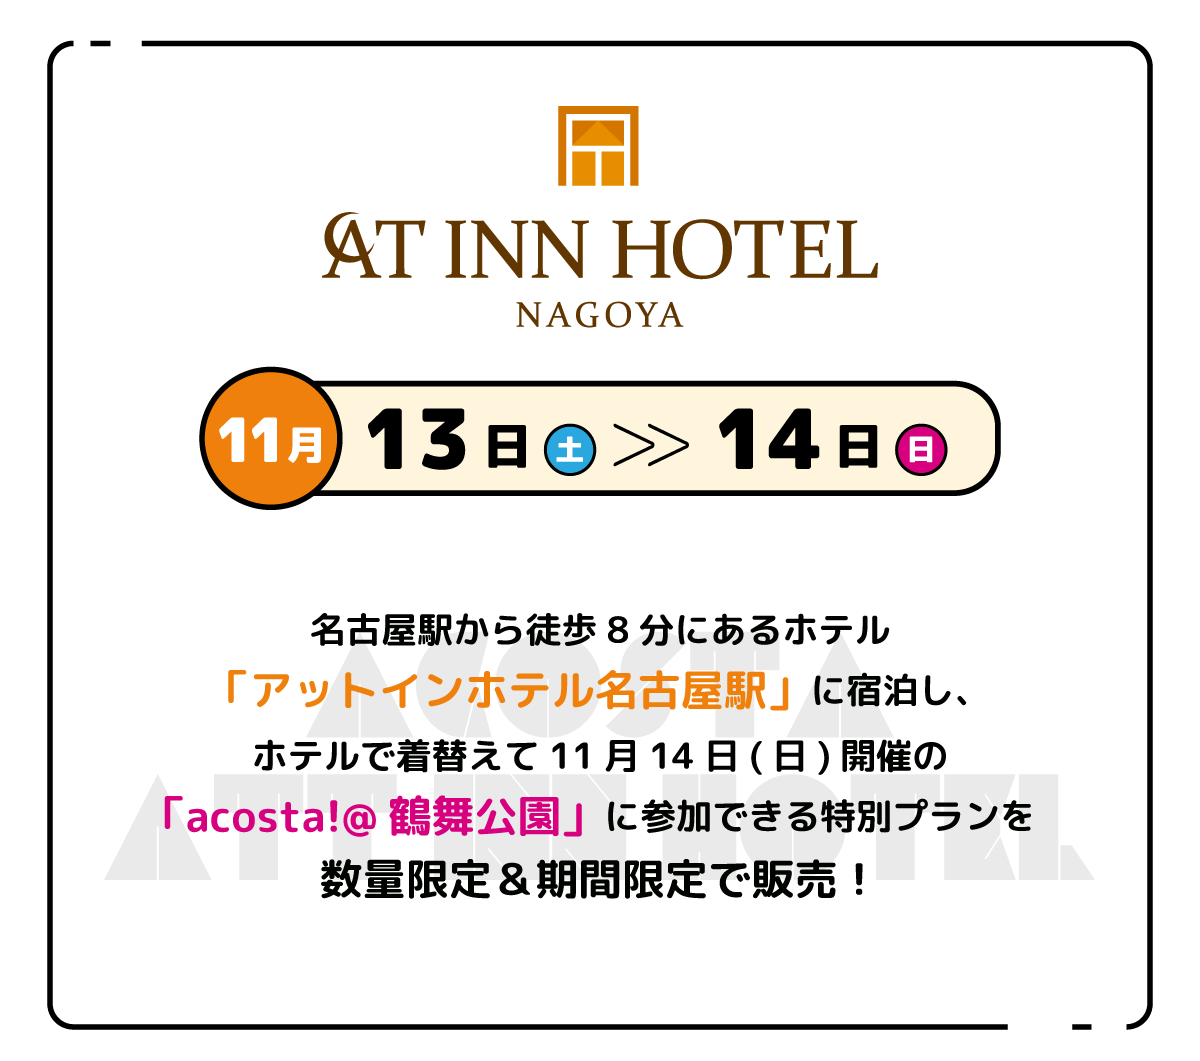 名古屋駅から徒歩8分にあるホテル「アットインホテル名古屋駅」に宿泊し、ホテルで着替えて11月14日(日)開催の「acosta!@鶴舞公園」に参加できる特別プランを数量限定販売！